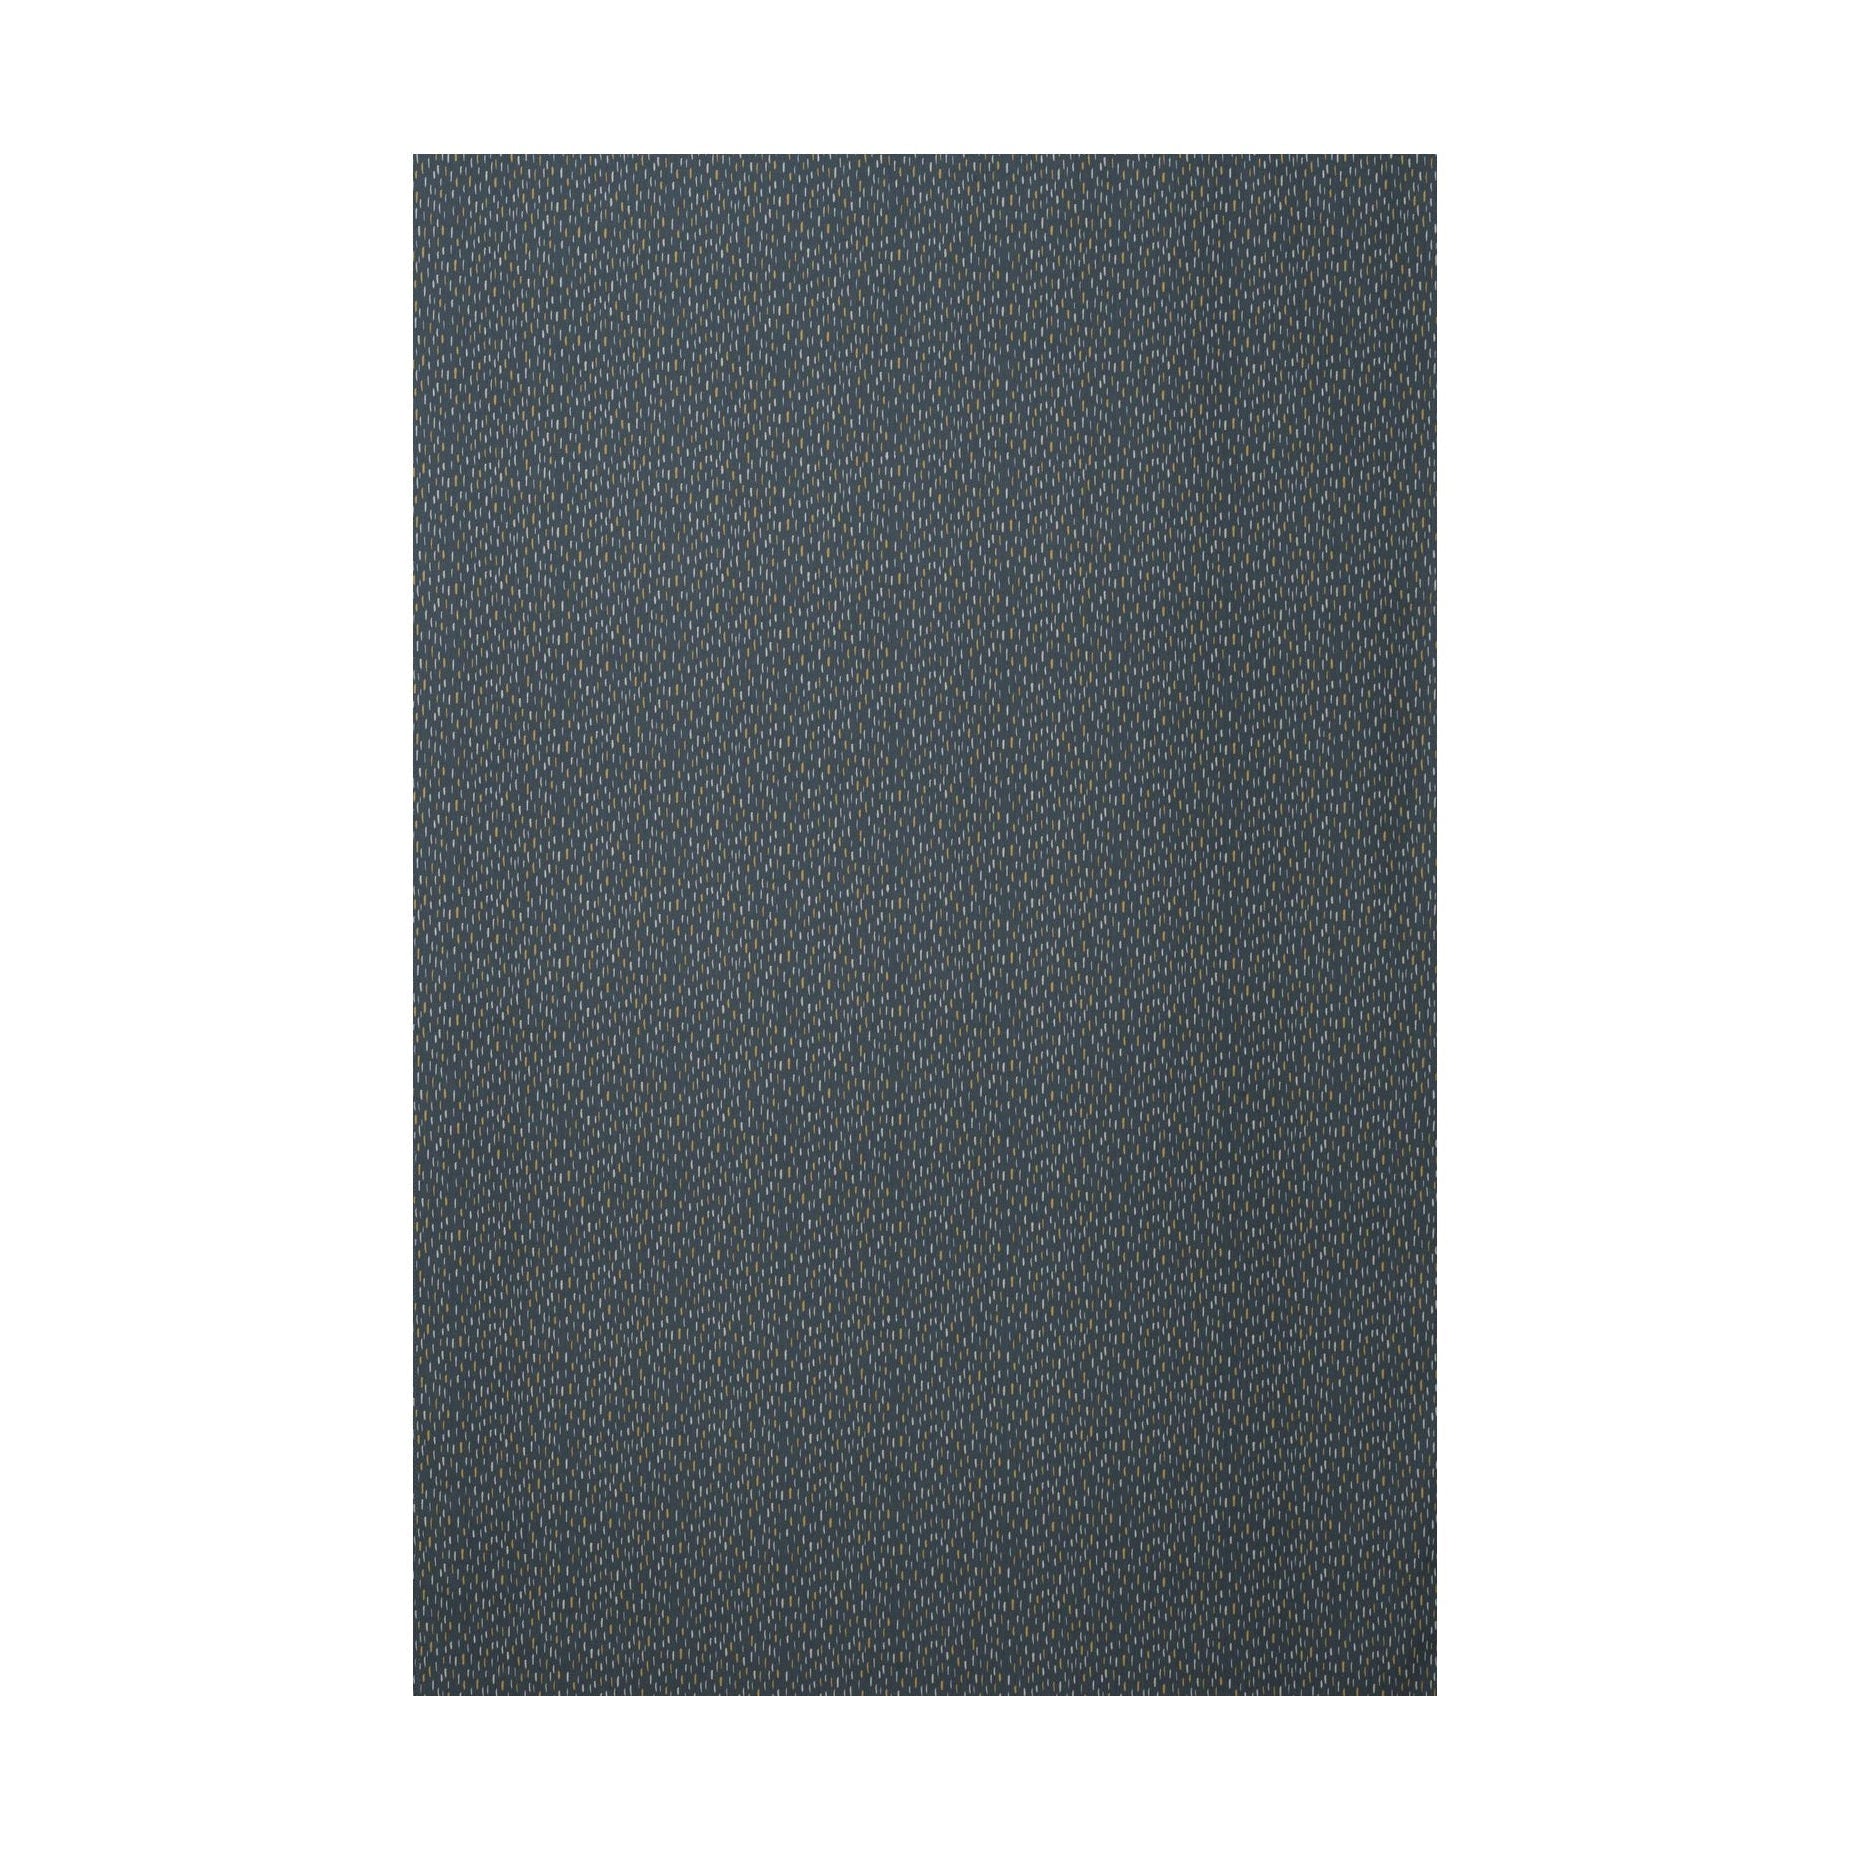 Spira Art Fabric Ancho de 150 cm (precio por metro), azul